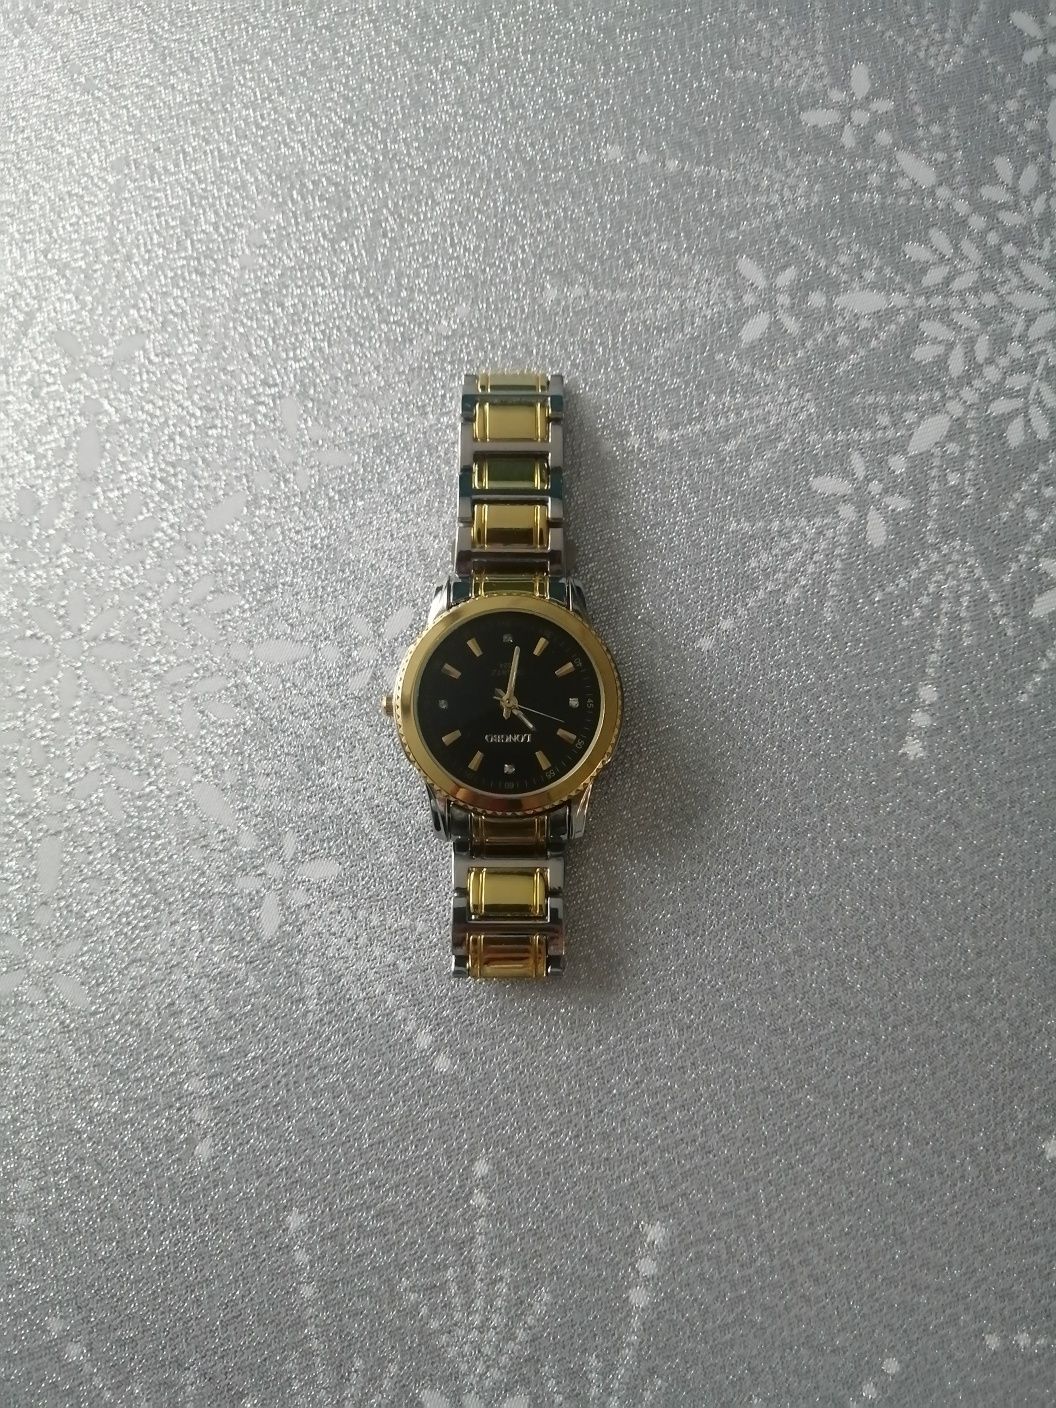 Nowy zegarek męski na branzolecie złoto srebrny